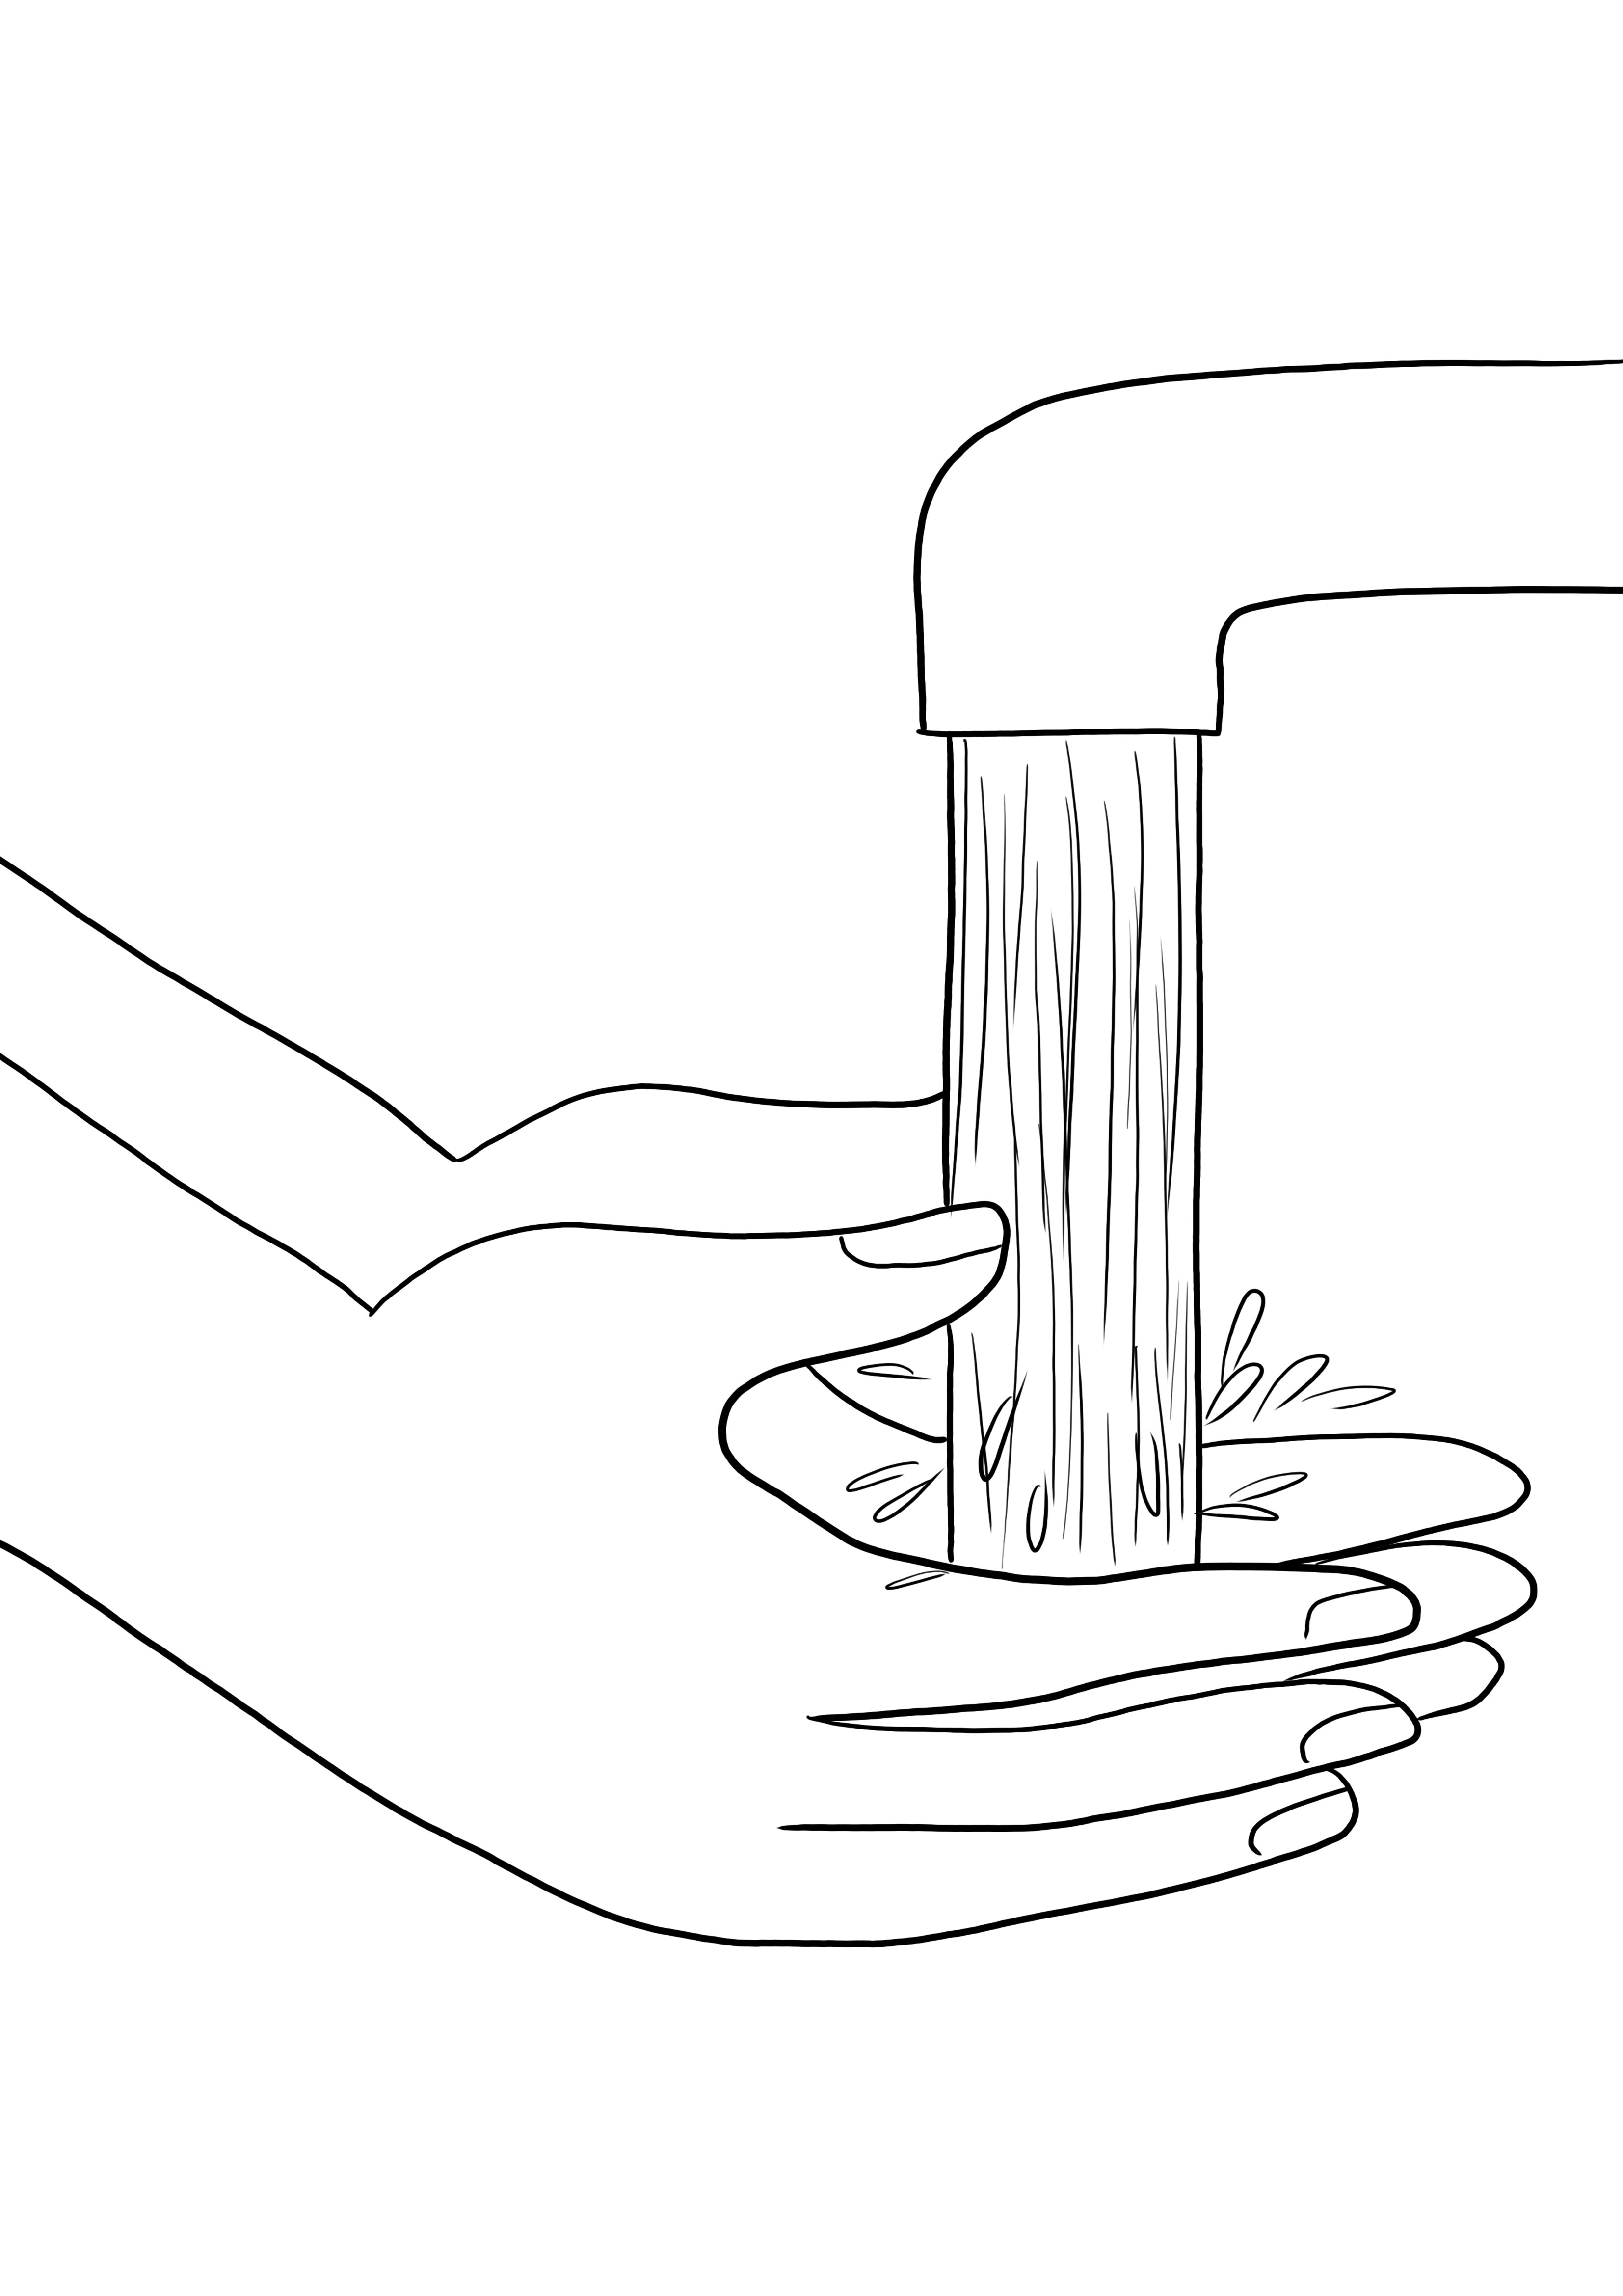 Lavado de manos simple para colorear e imprimir imágenes gratis: una excelente manera de aprender sobre higiene